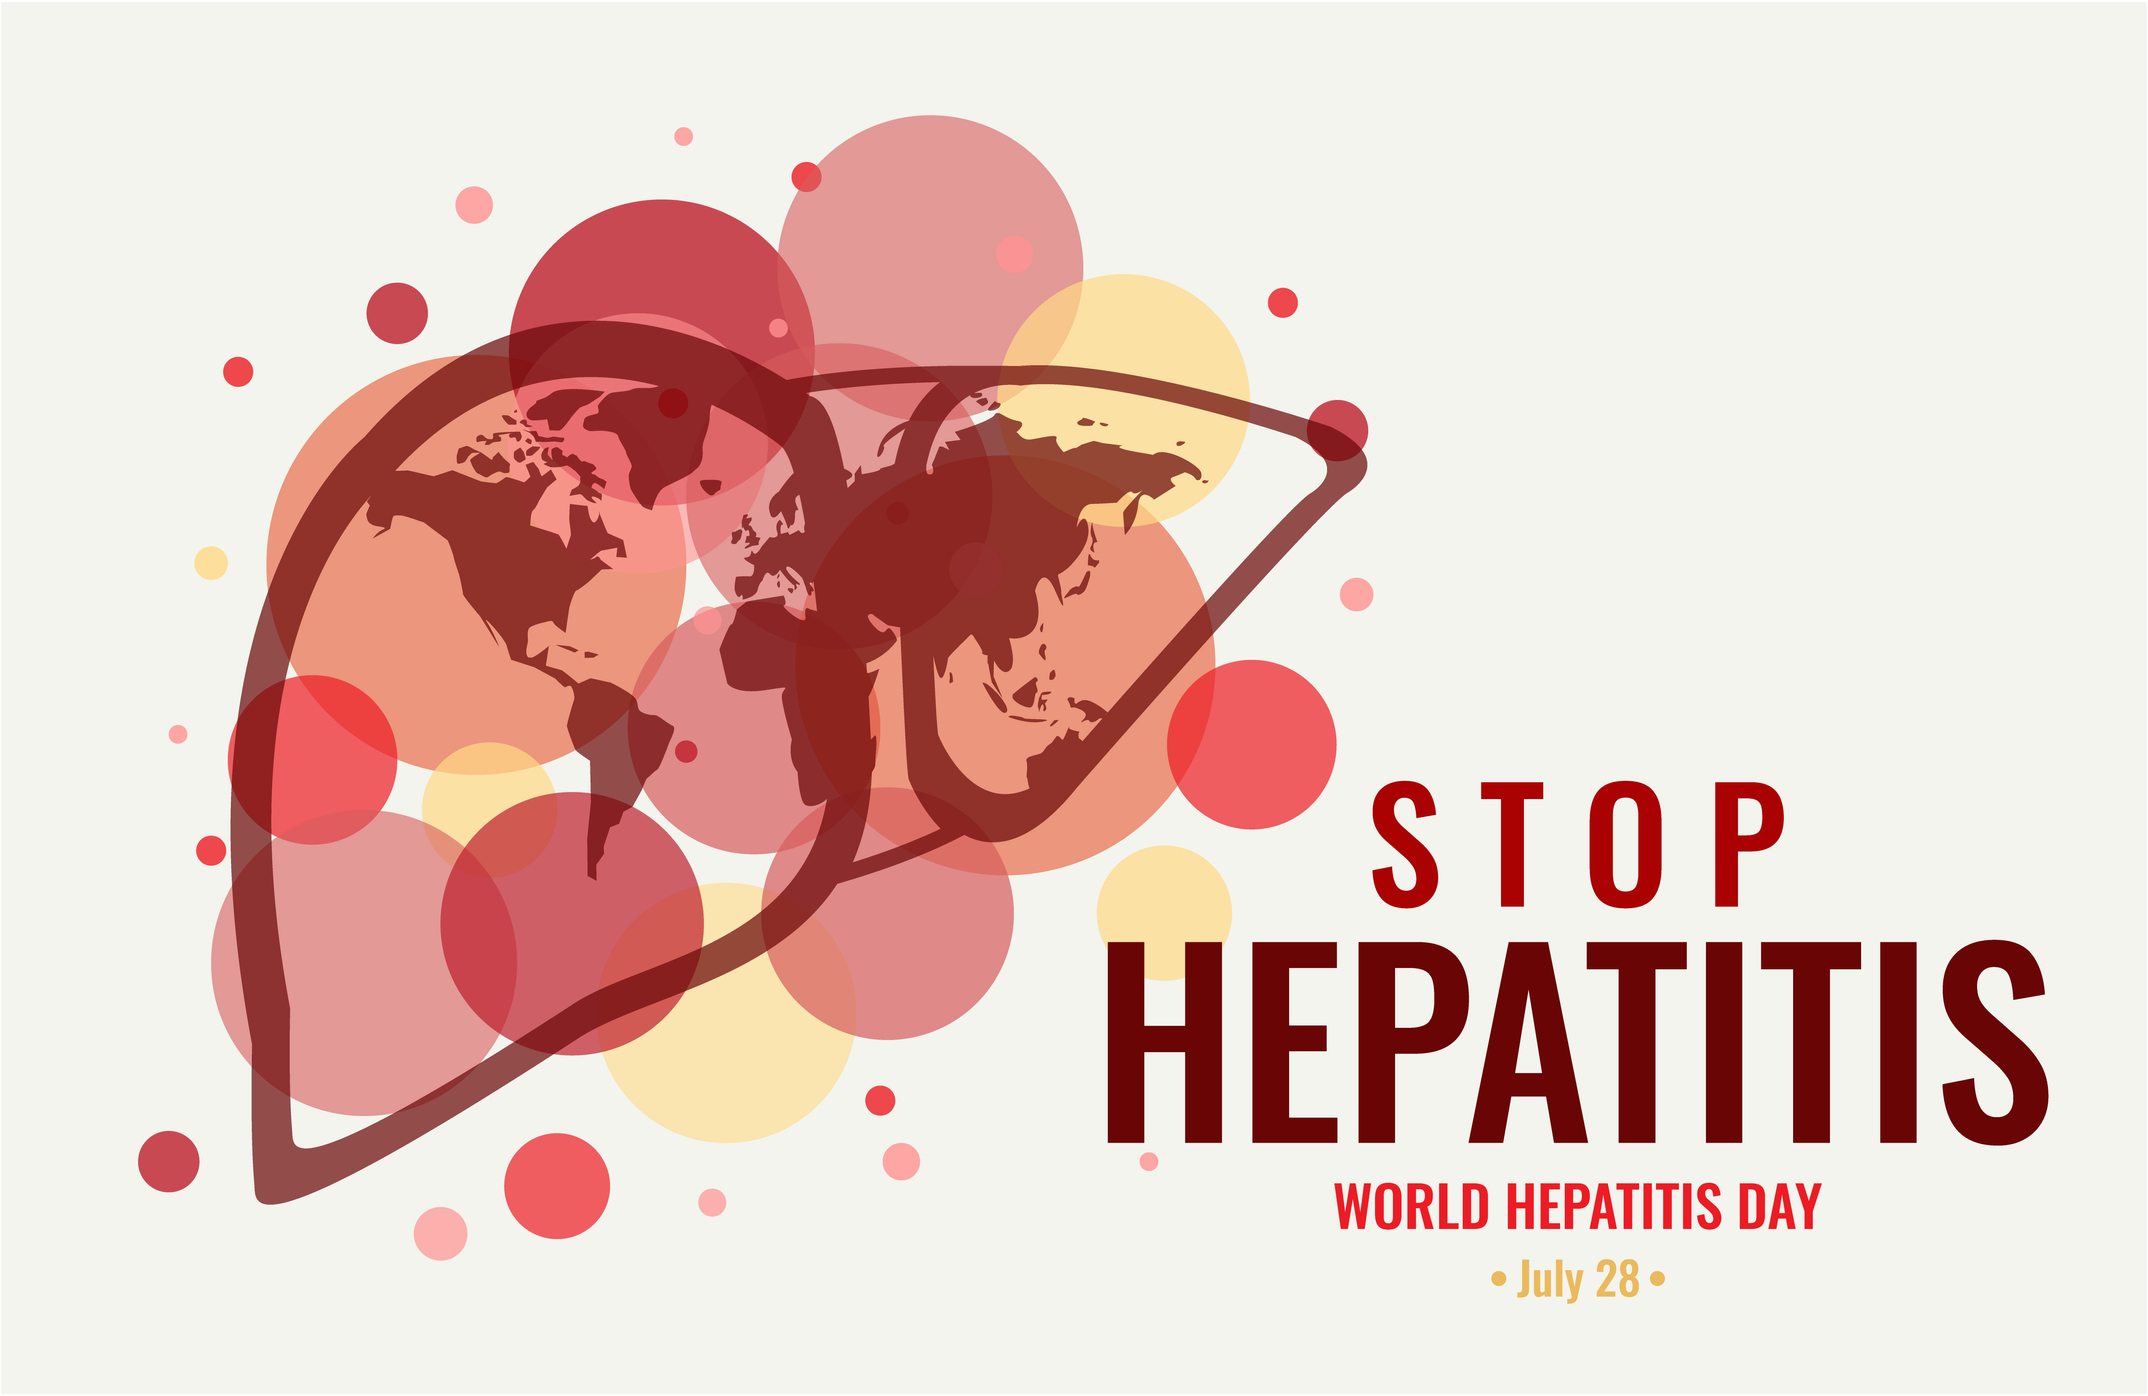 World hepatitis day is July 28, 2020